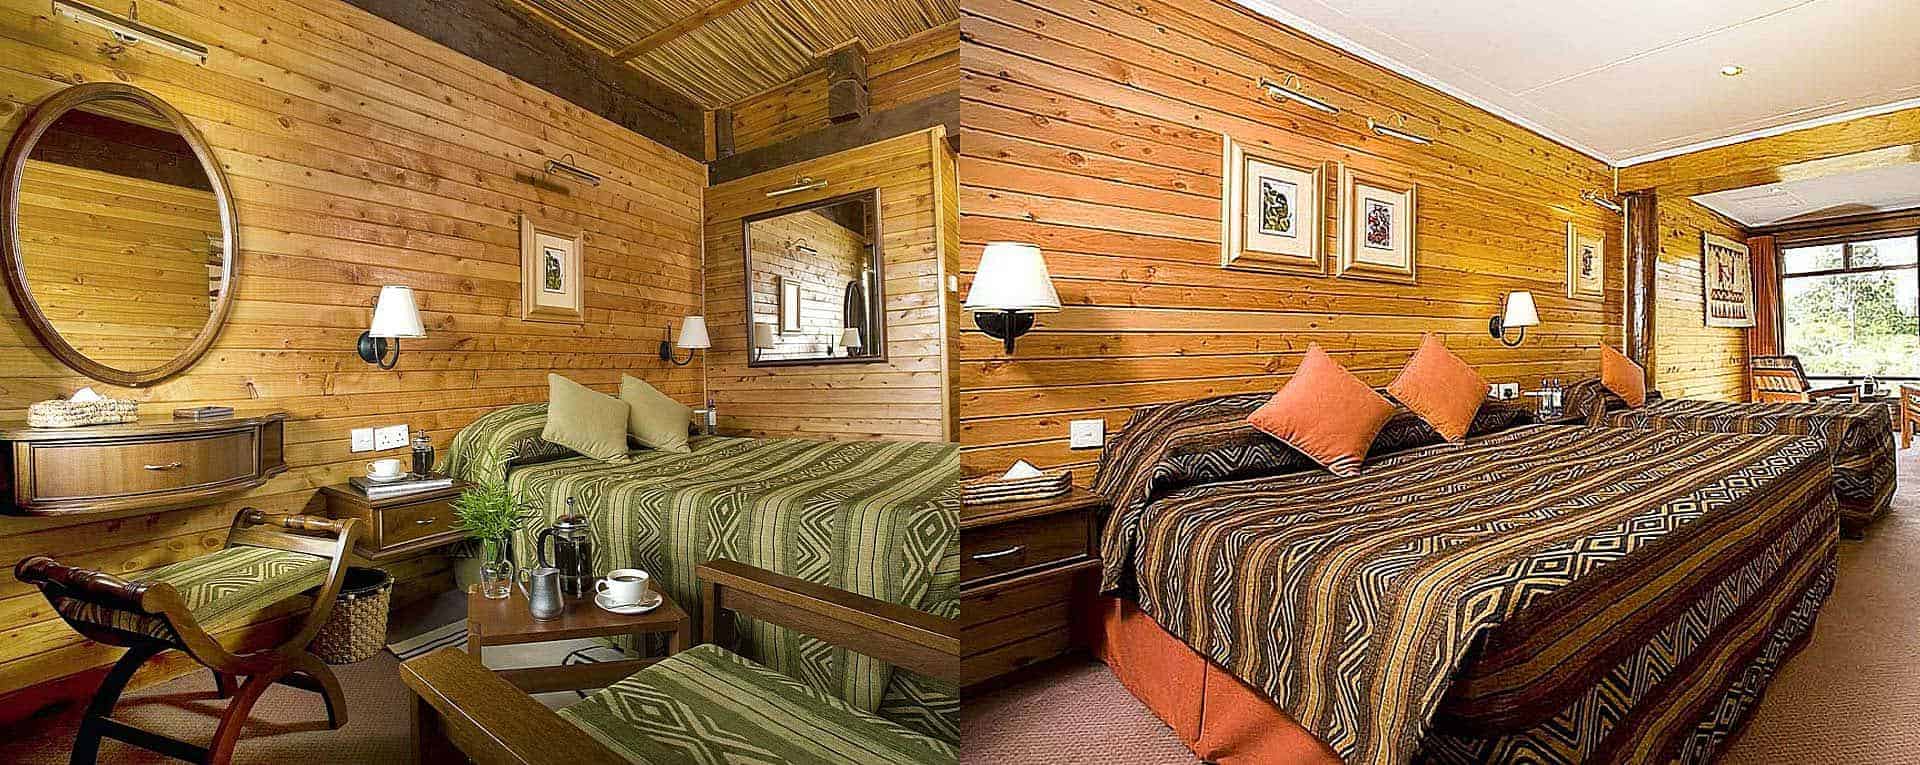 Serena Mountain Lodge, Mount Kenya - Kenya - AfricanMecca Safaris & Tours